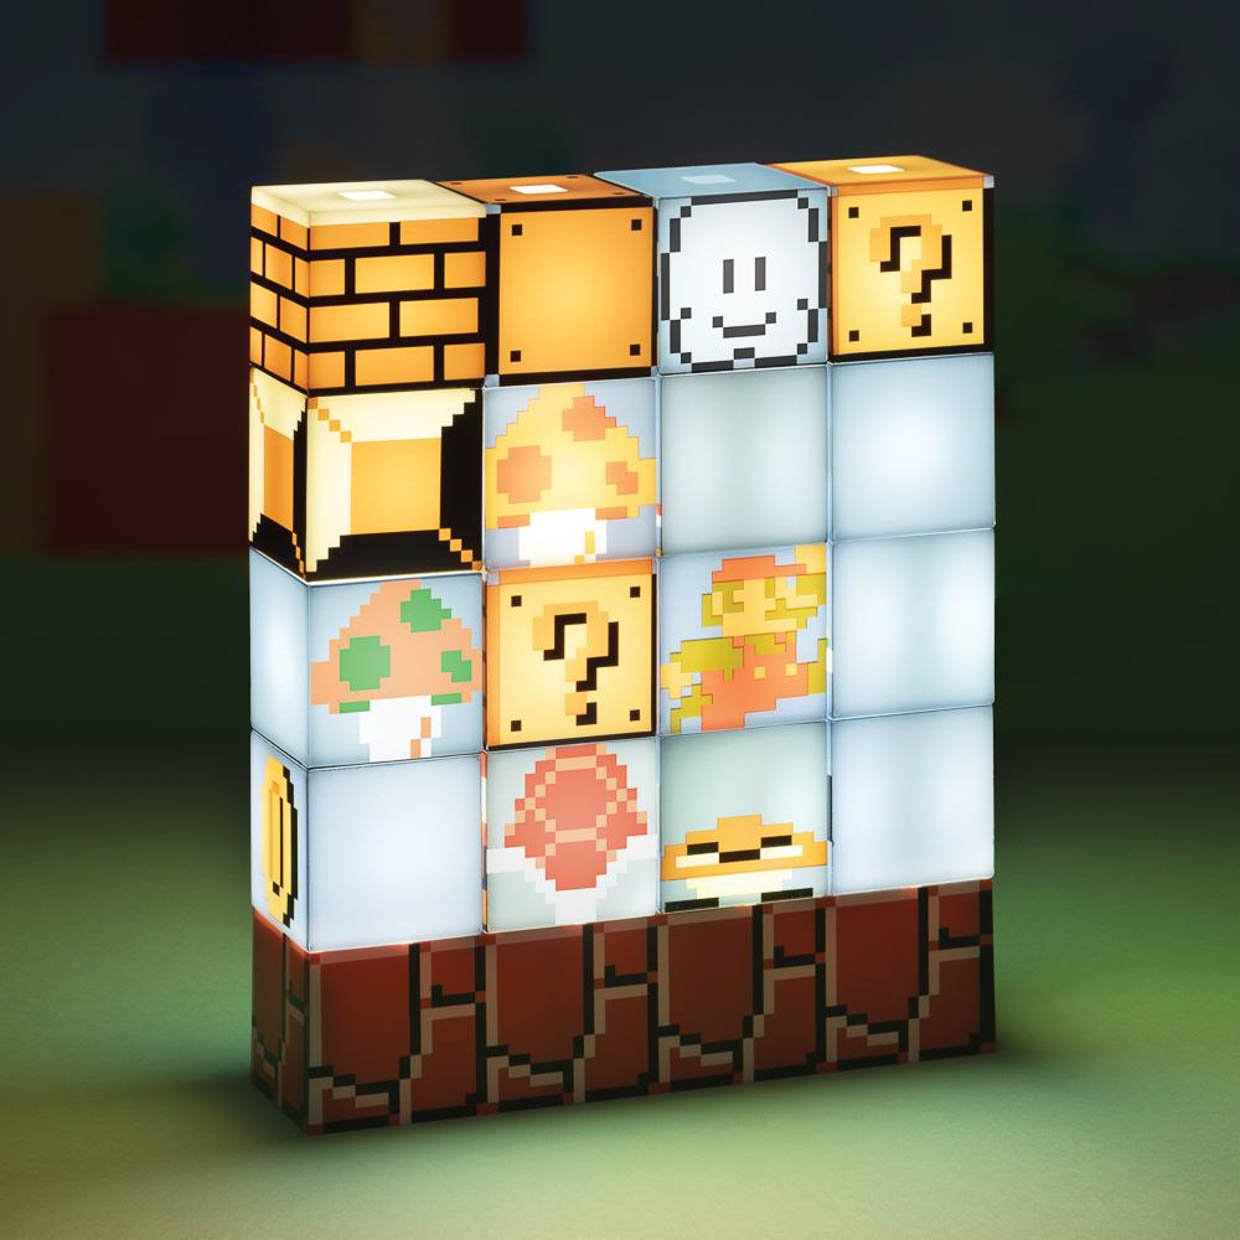 Super Mario Bros. Build-a-Level Light